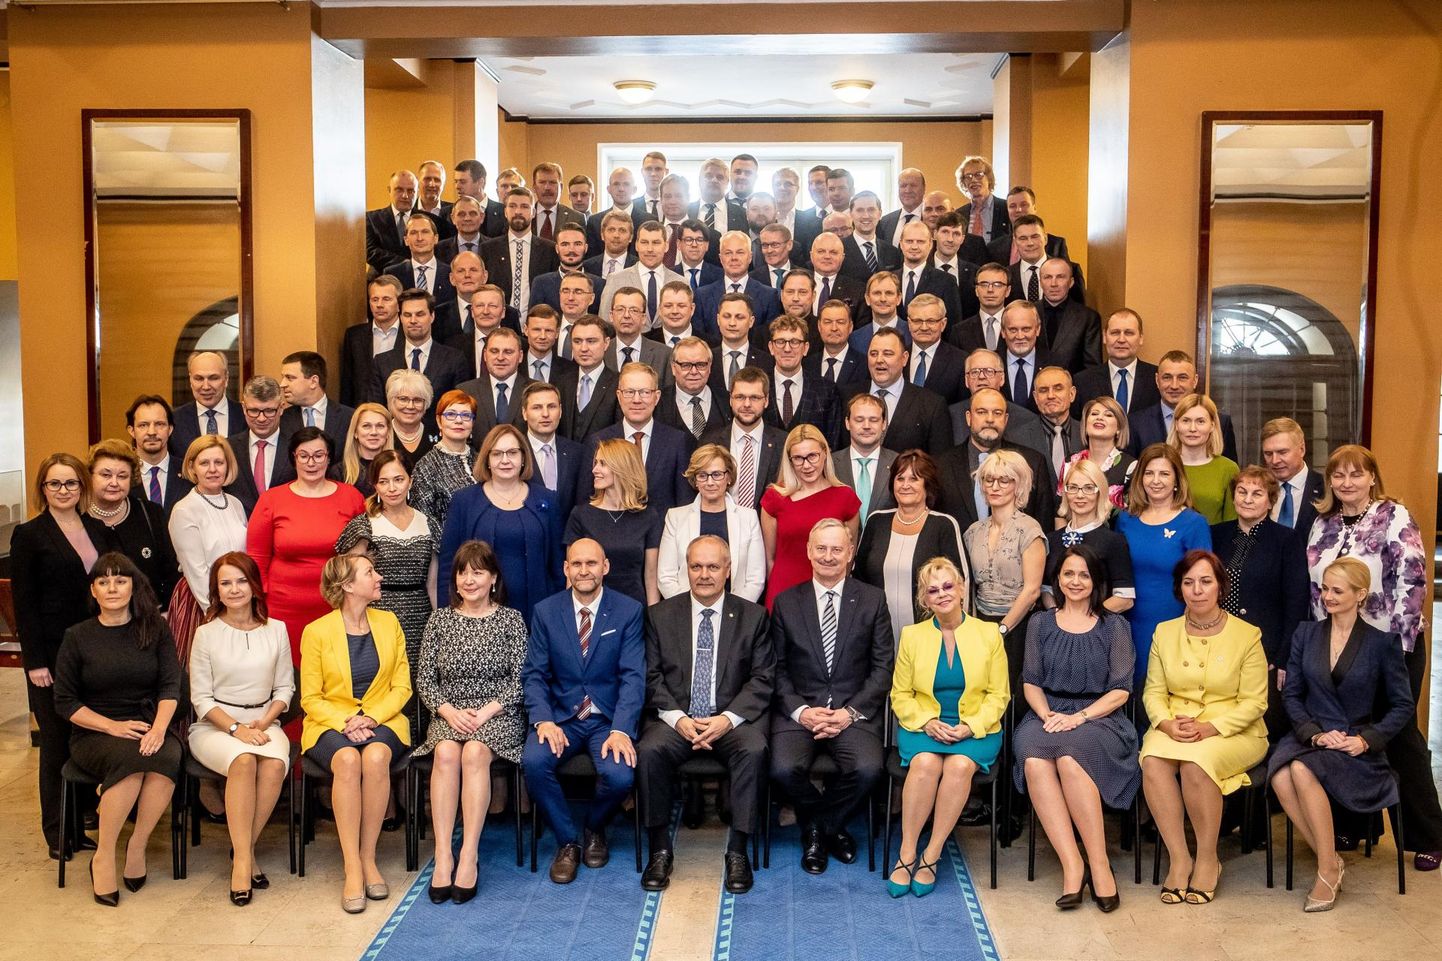 Members of parliament.